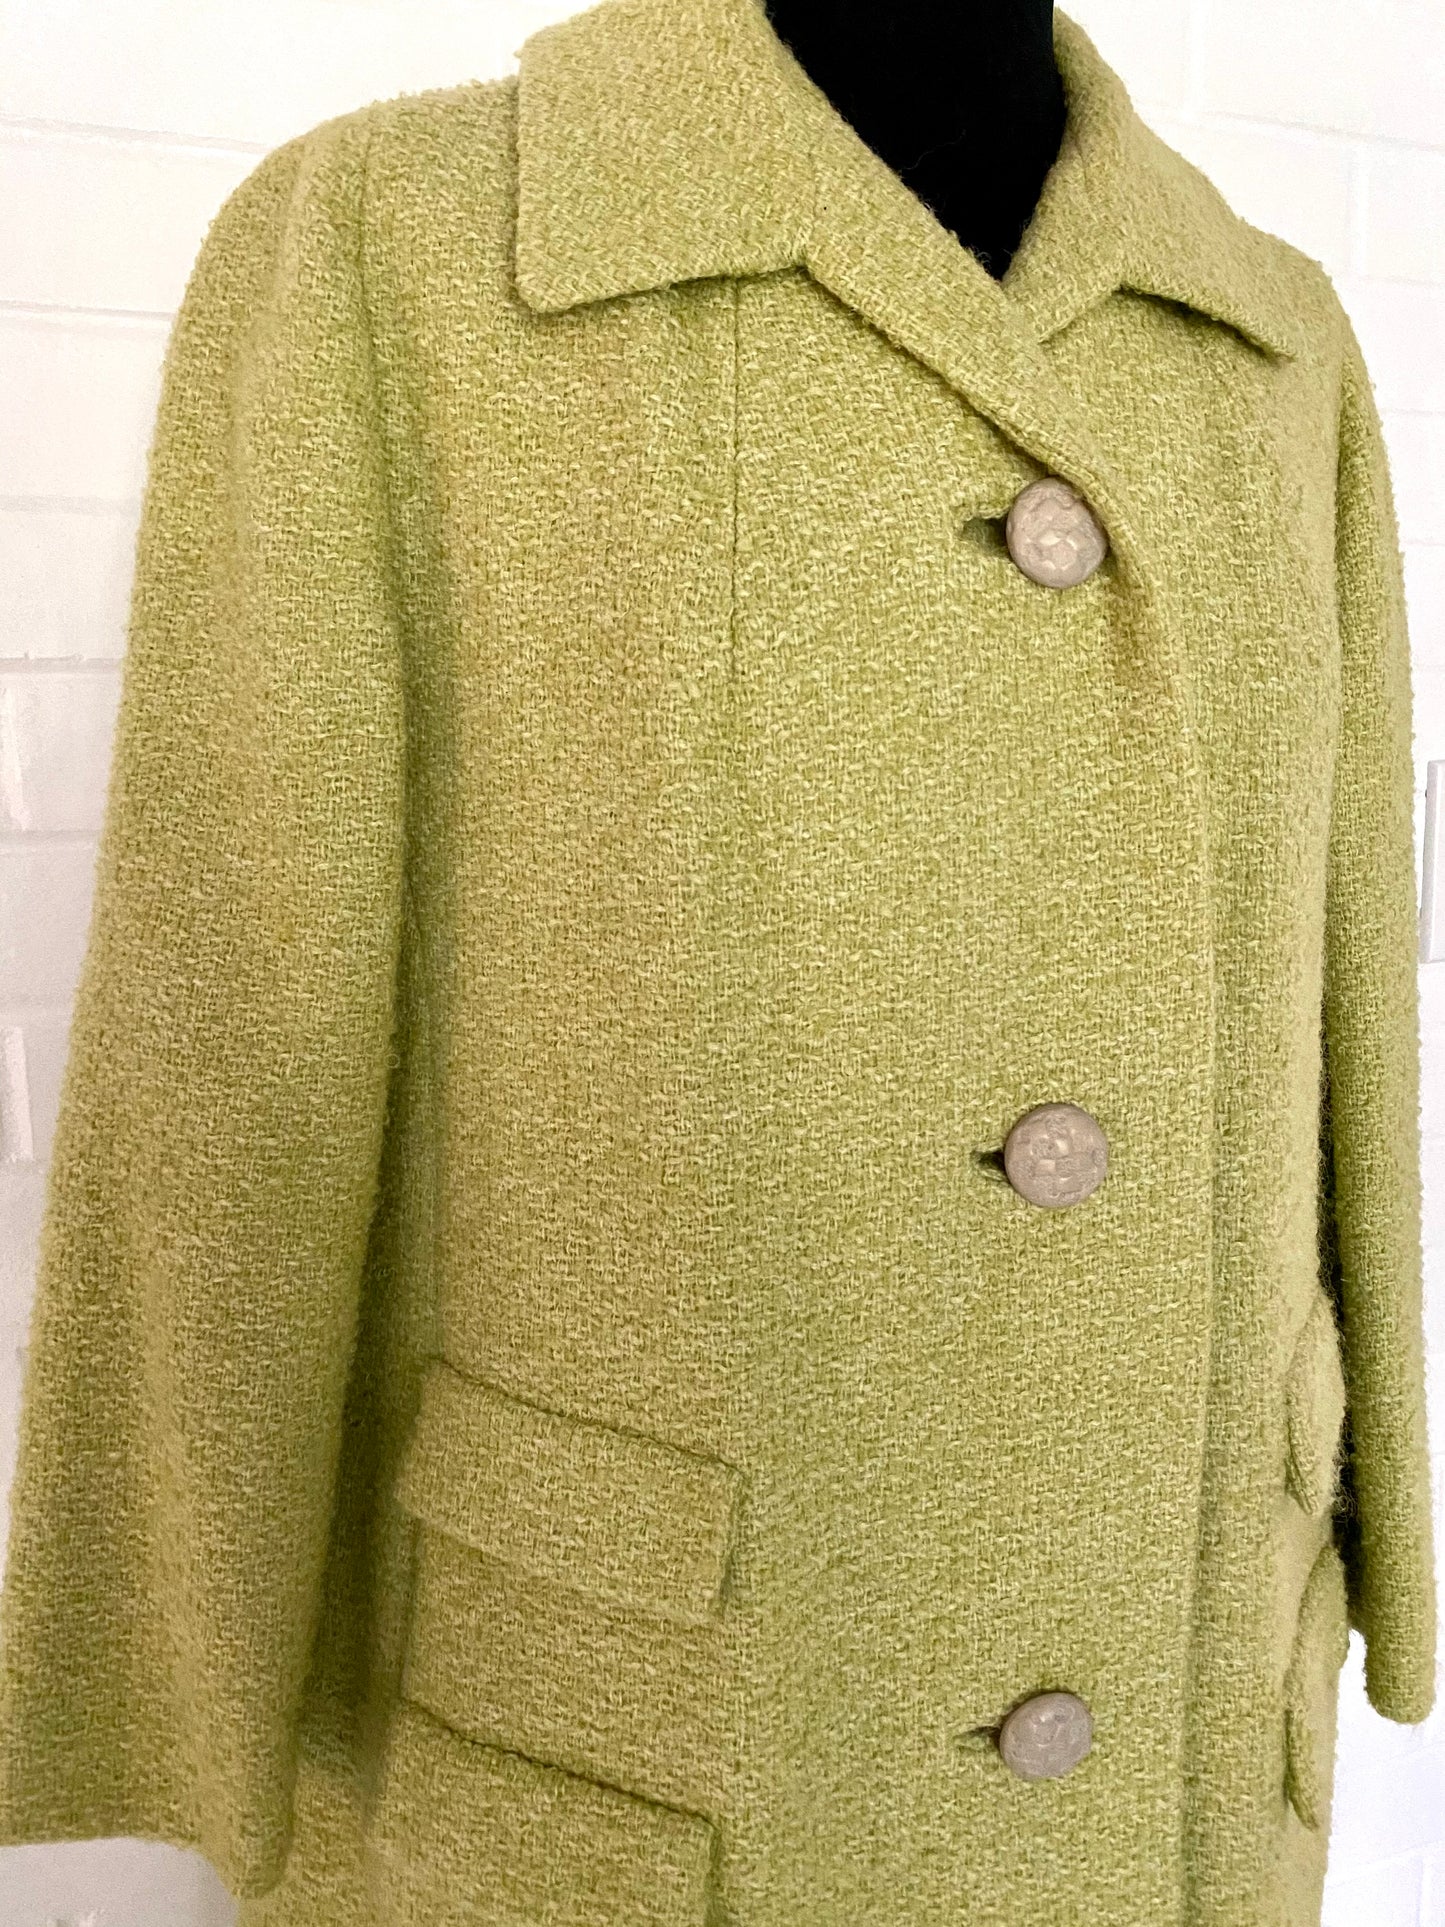 1960s Mint Green Coat